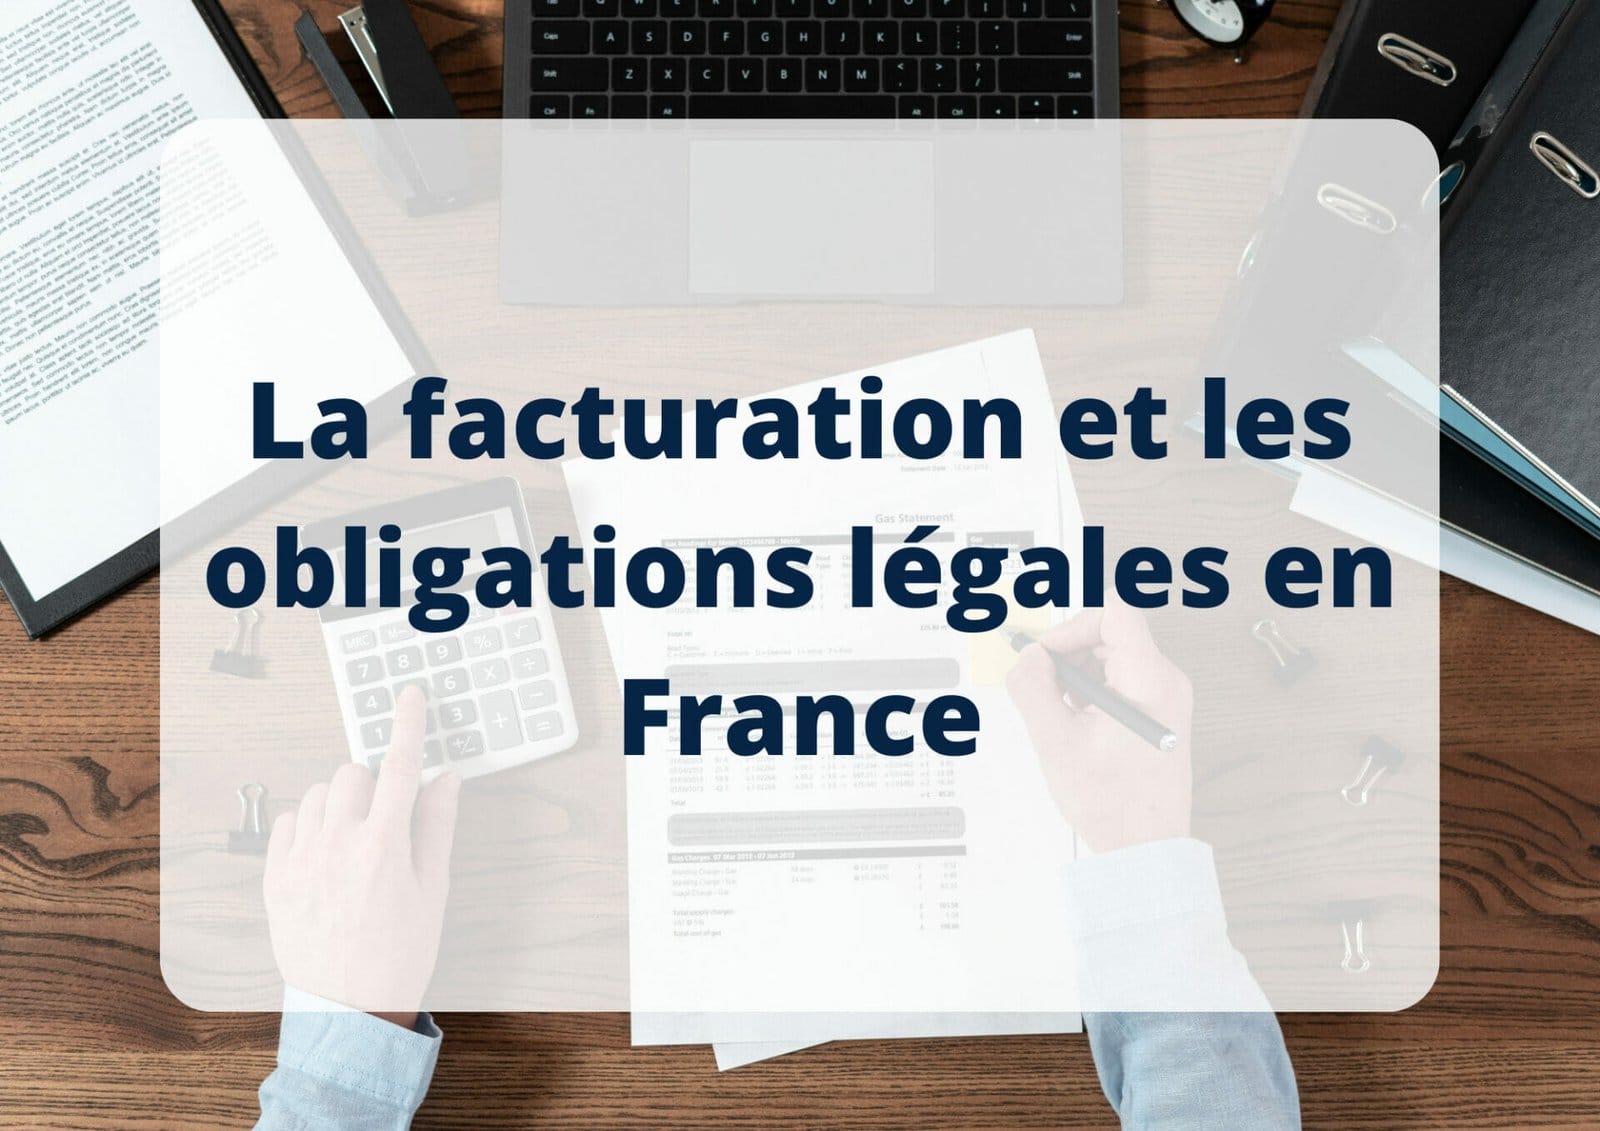 La facturation et obligations légales en France